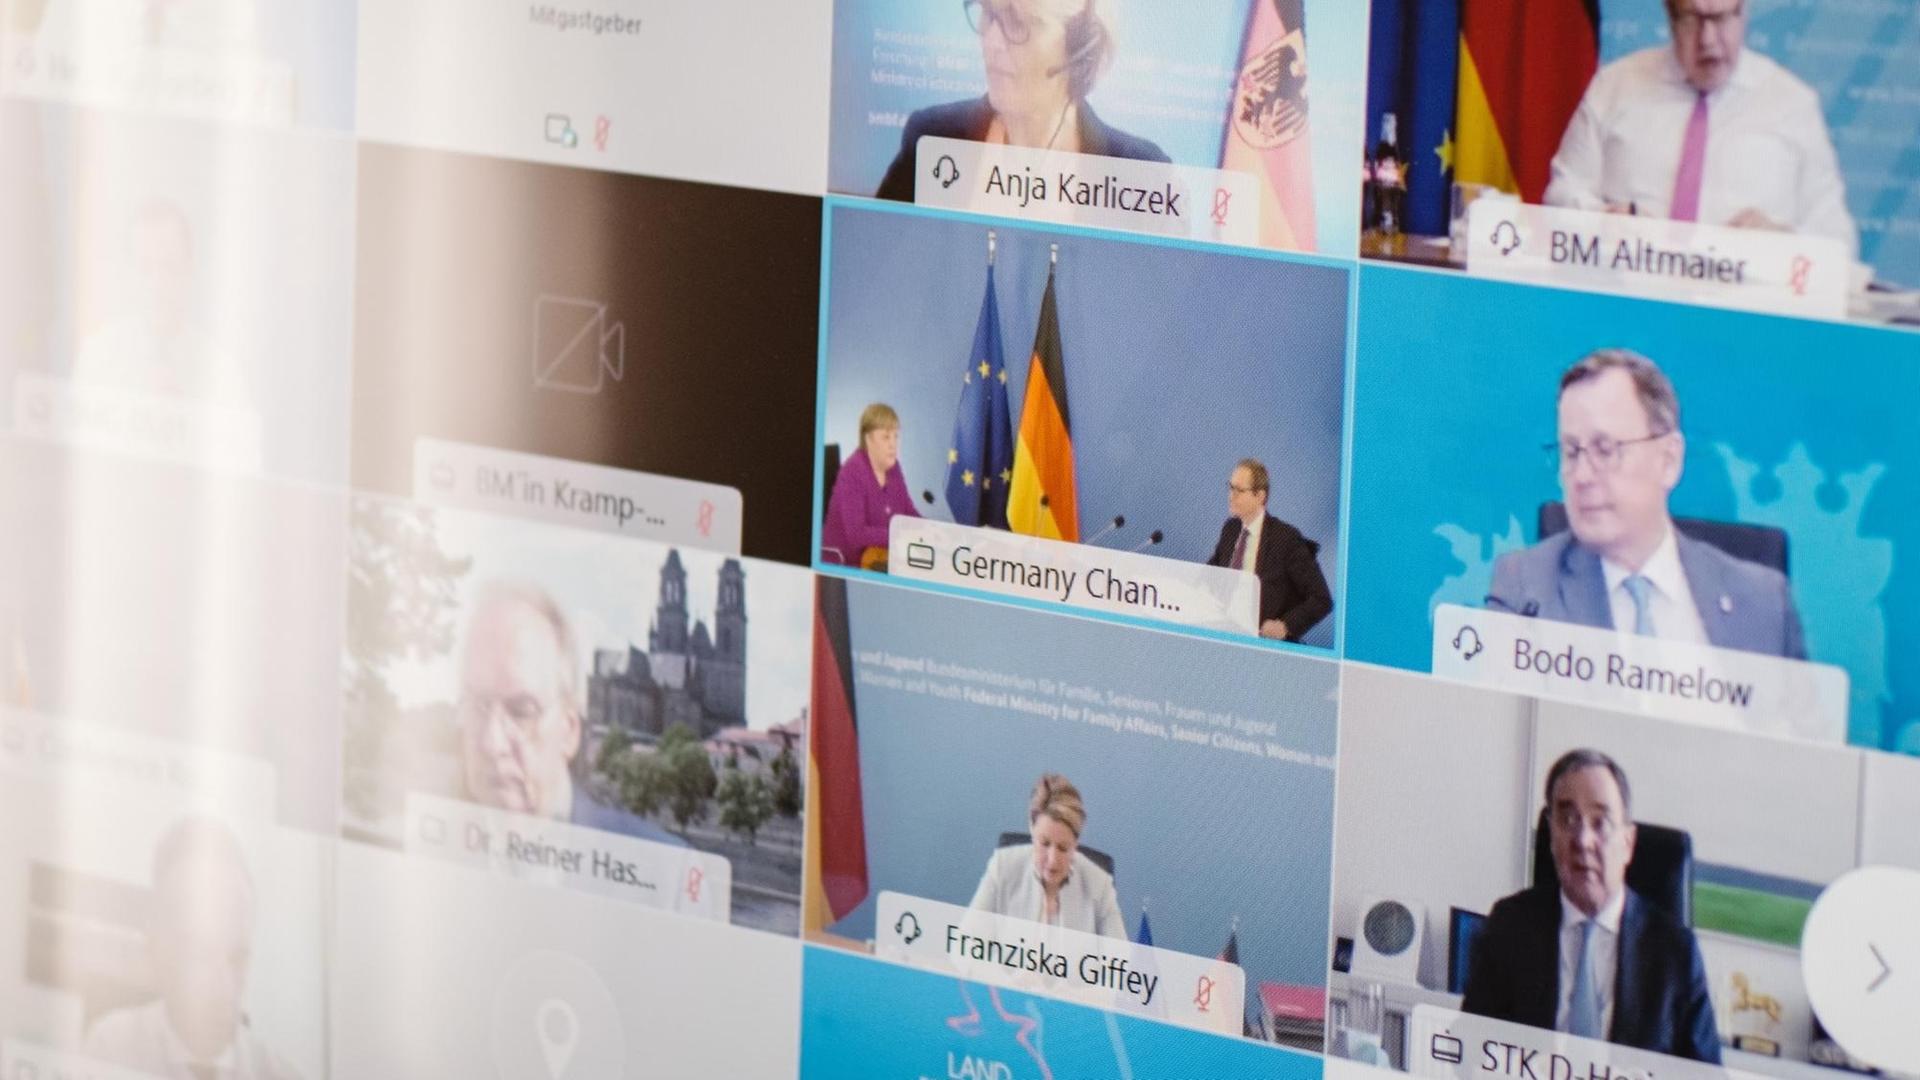 Ministerpräsidenten, Kanzlerin und weitere Vertreter der Bundesregierung sind während der Bund-Länder-Konferenz am 3.3.2021 im Gästehaus der Niedersächsischen Landesregierung auf einem Bildschirm zu sehen.